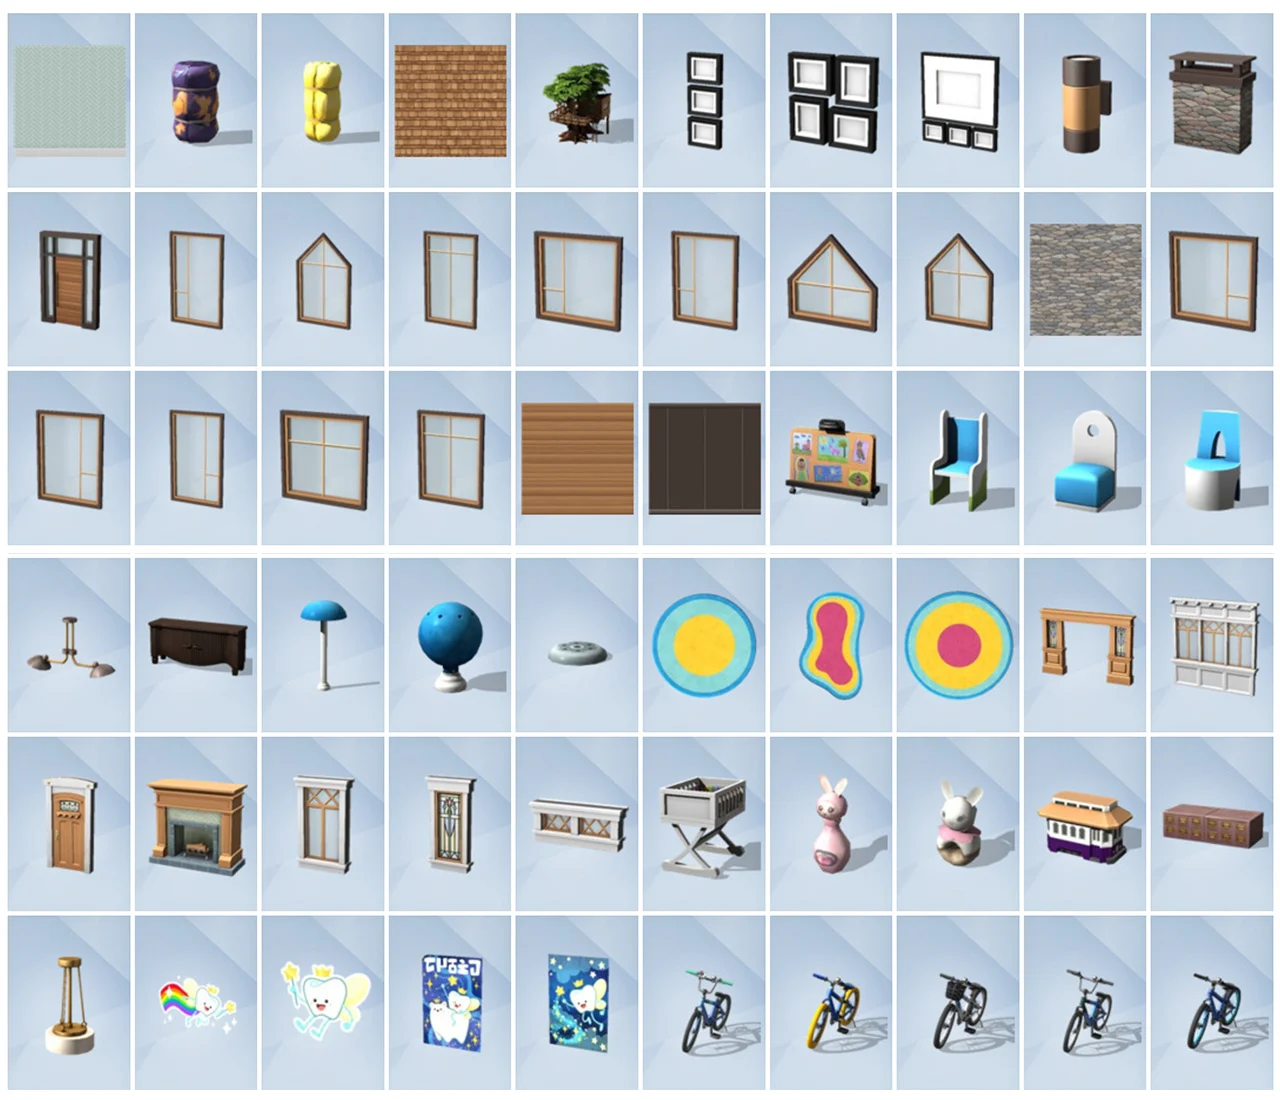 Compilado Todos os Itens Modo Construção The Sims 4 - SimsTime